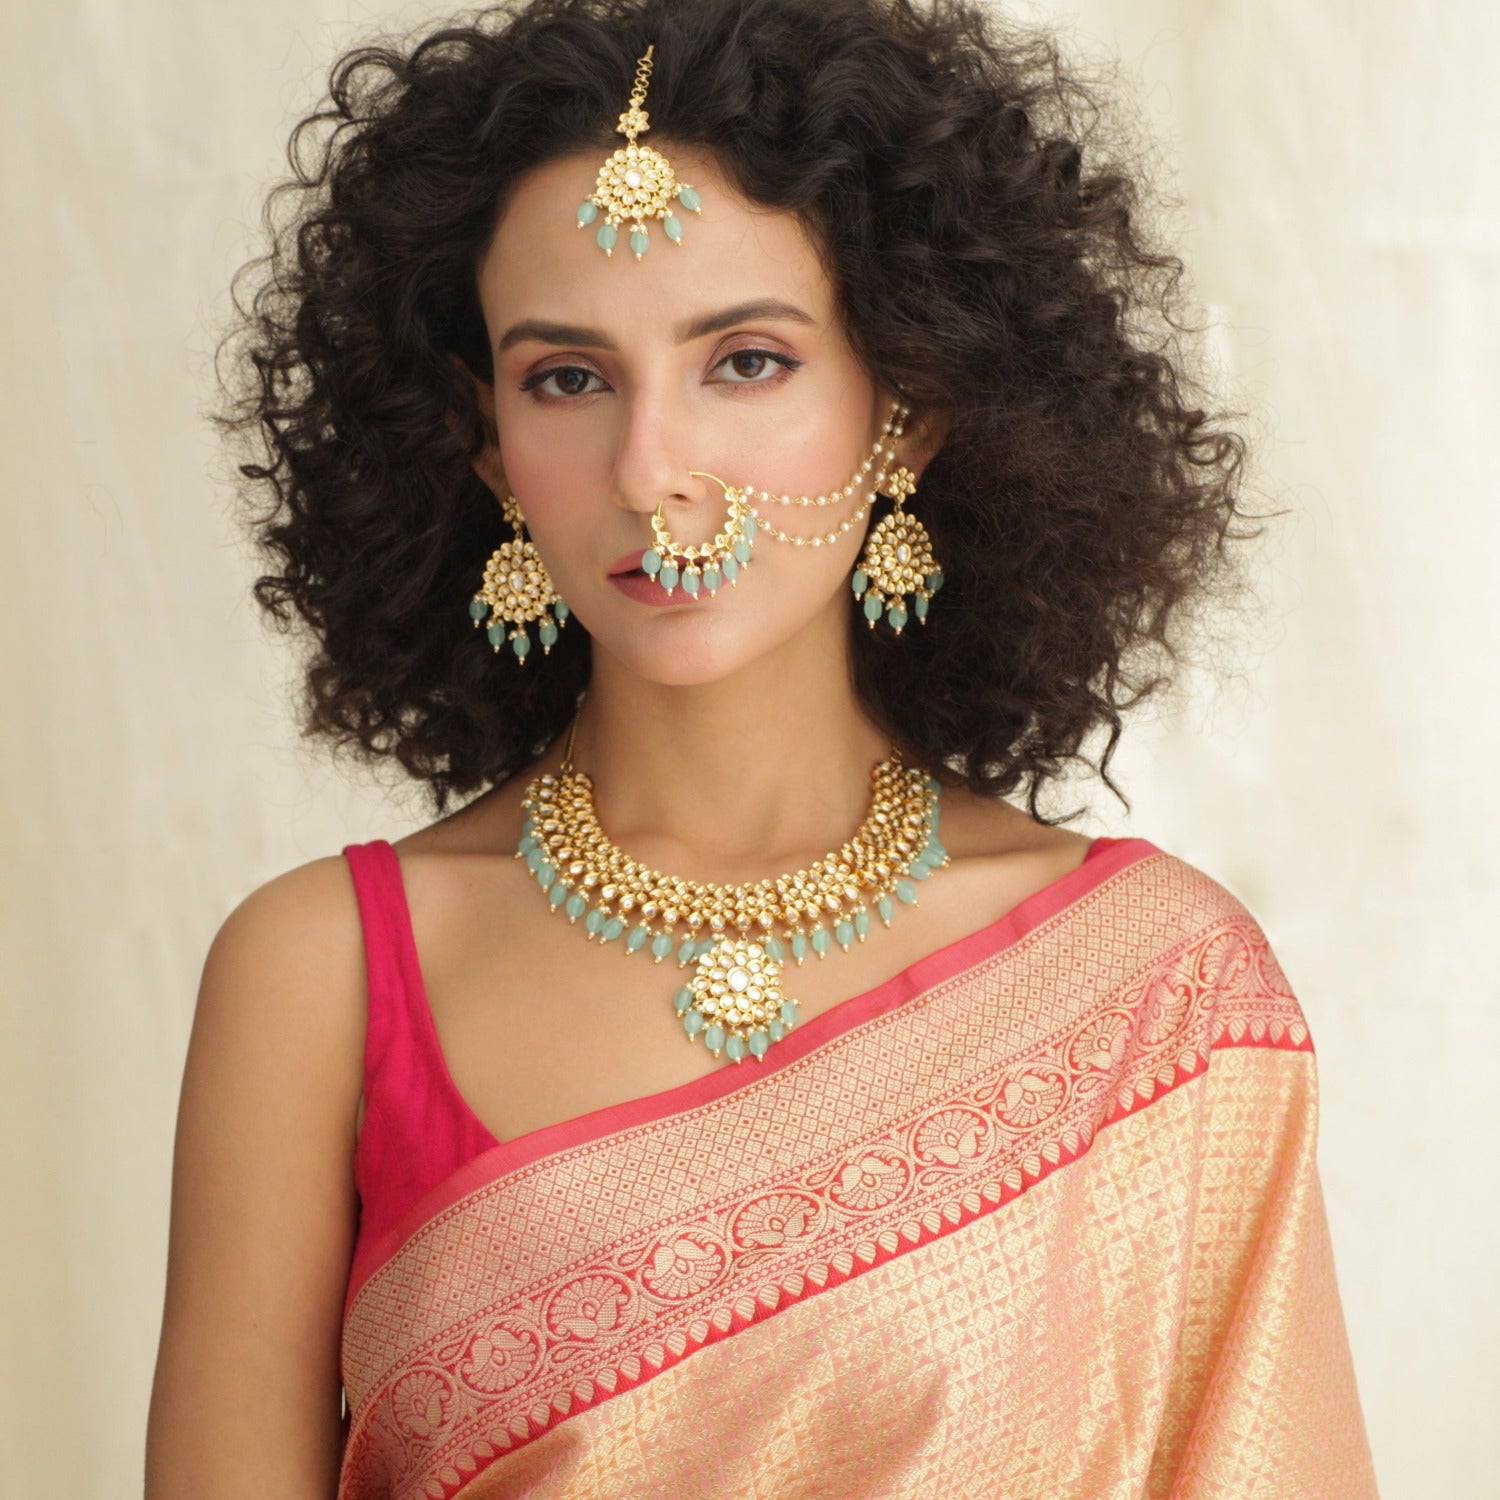 Amritsar Bride In Maroon Velvet Lehenga And Pastel Jewellery | Fashion  wedding jewelry, Fashion, Pakistani fashion